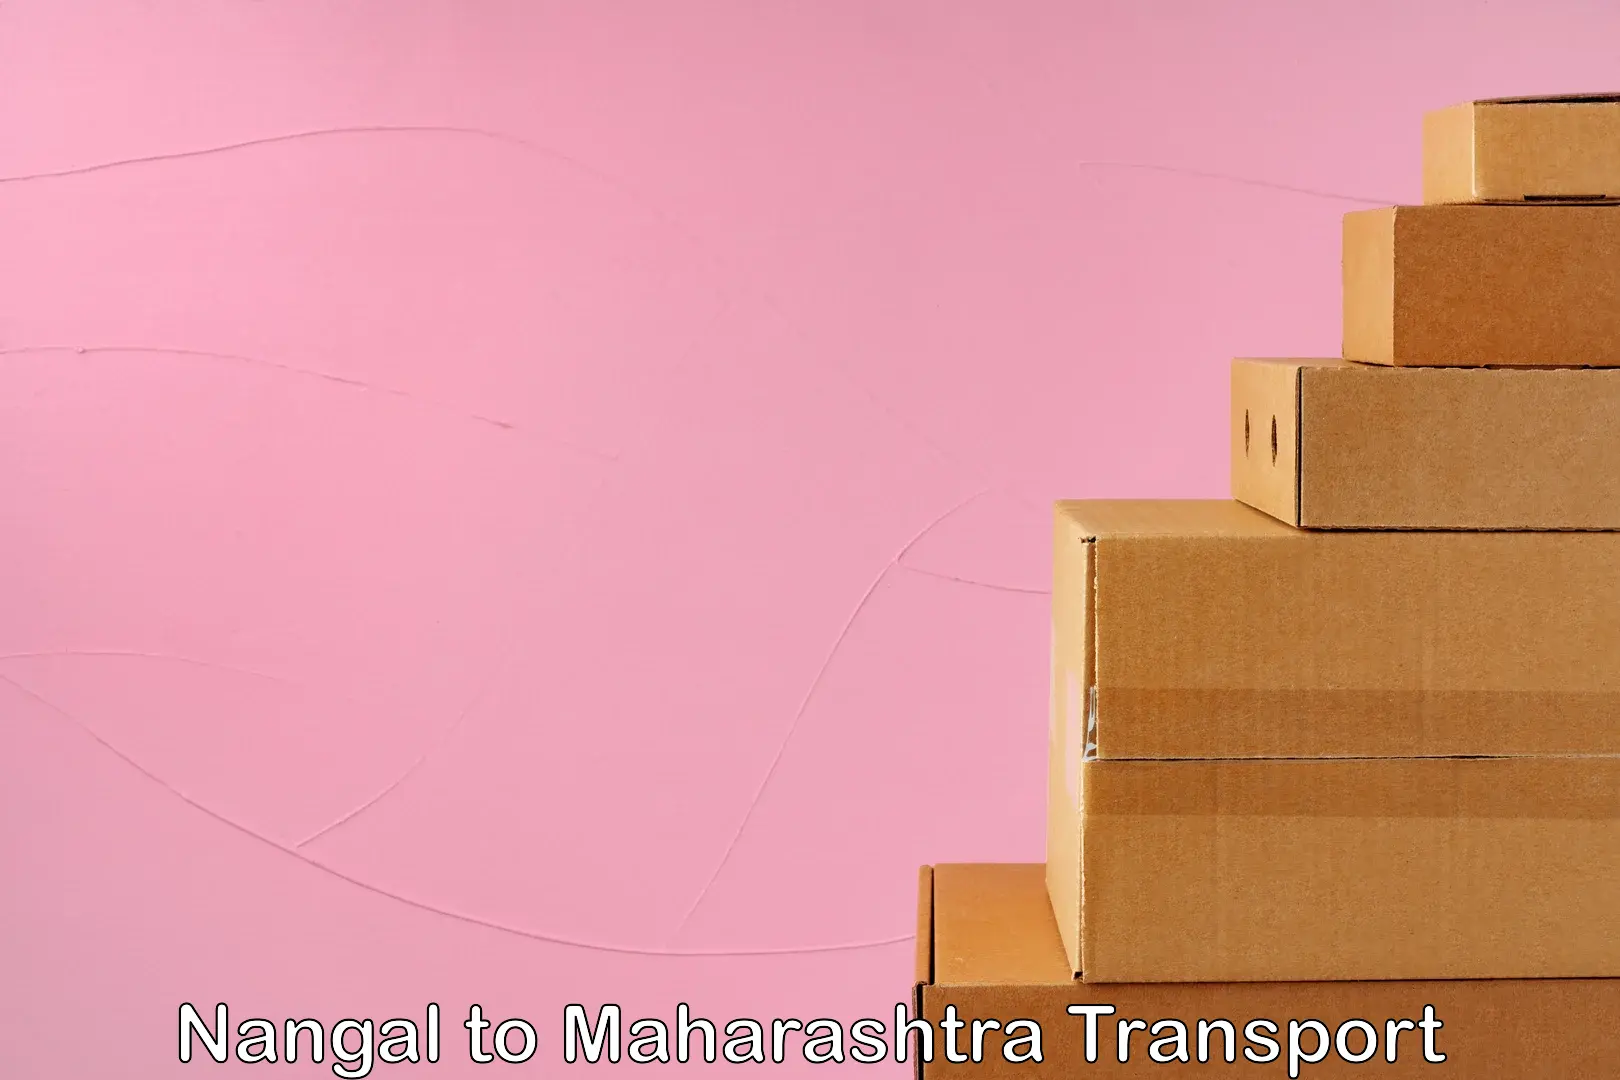 Furniture transport service Nangal to Maharashtra